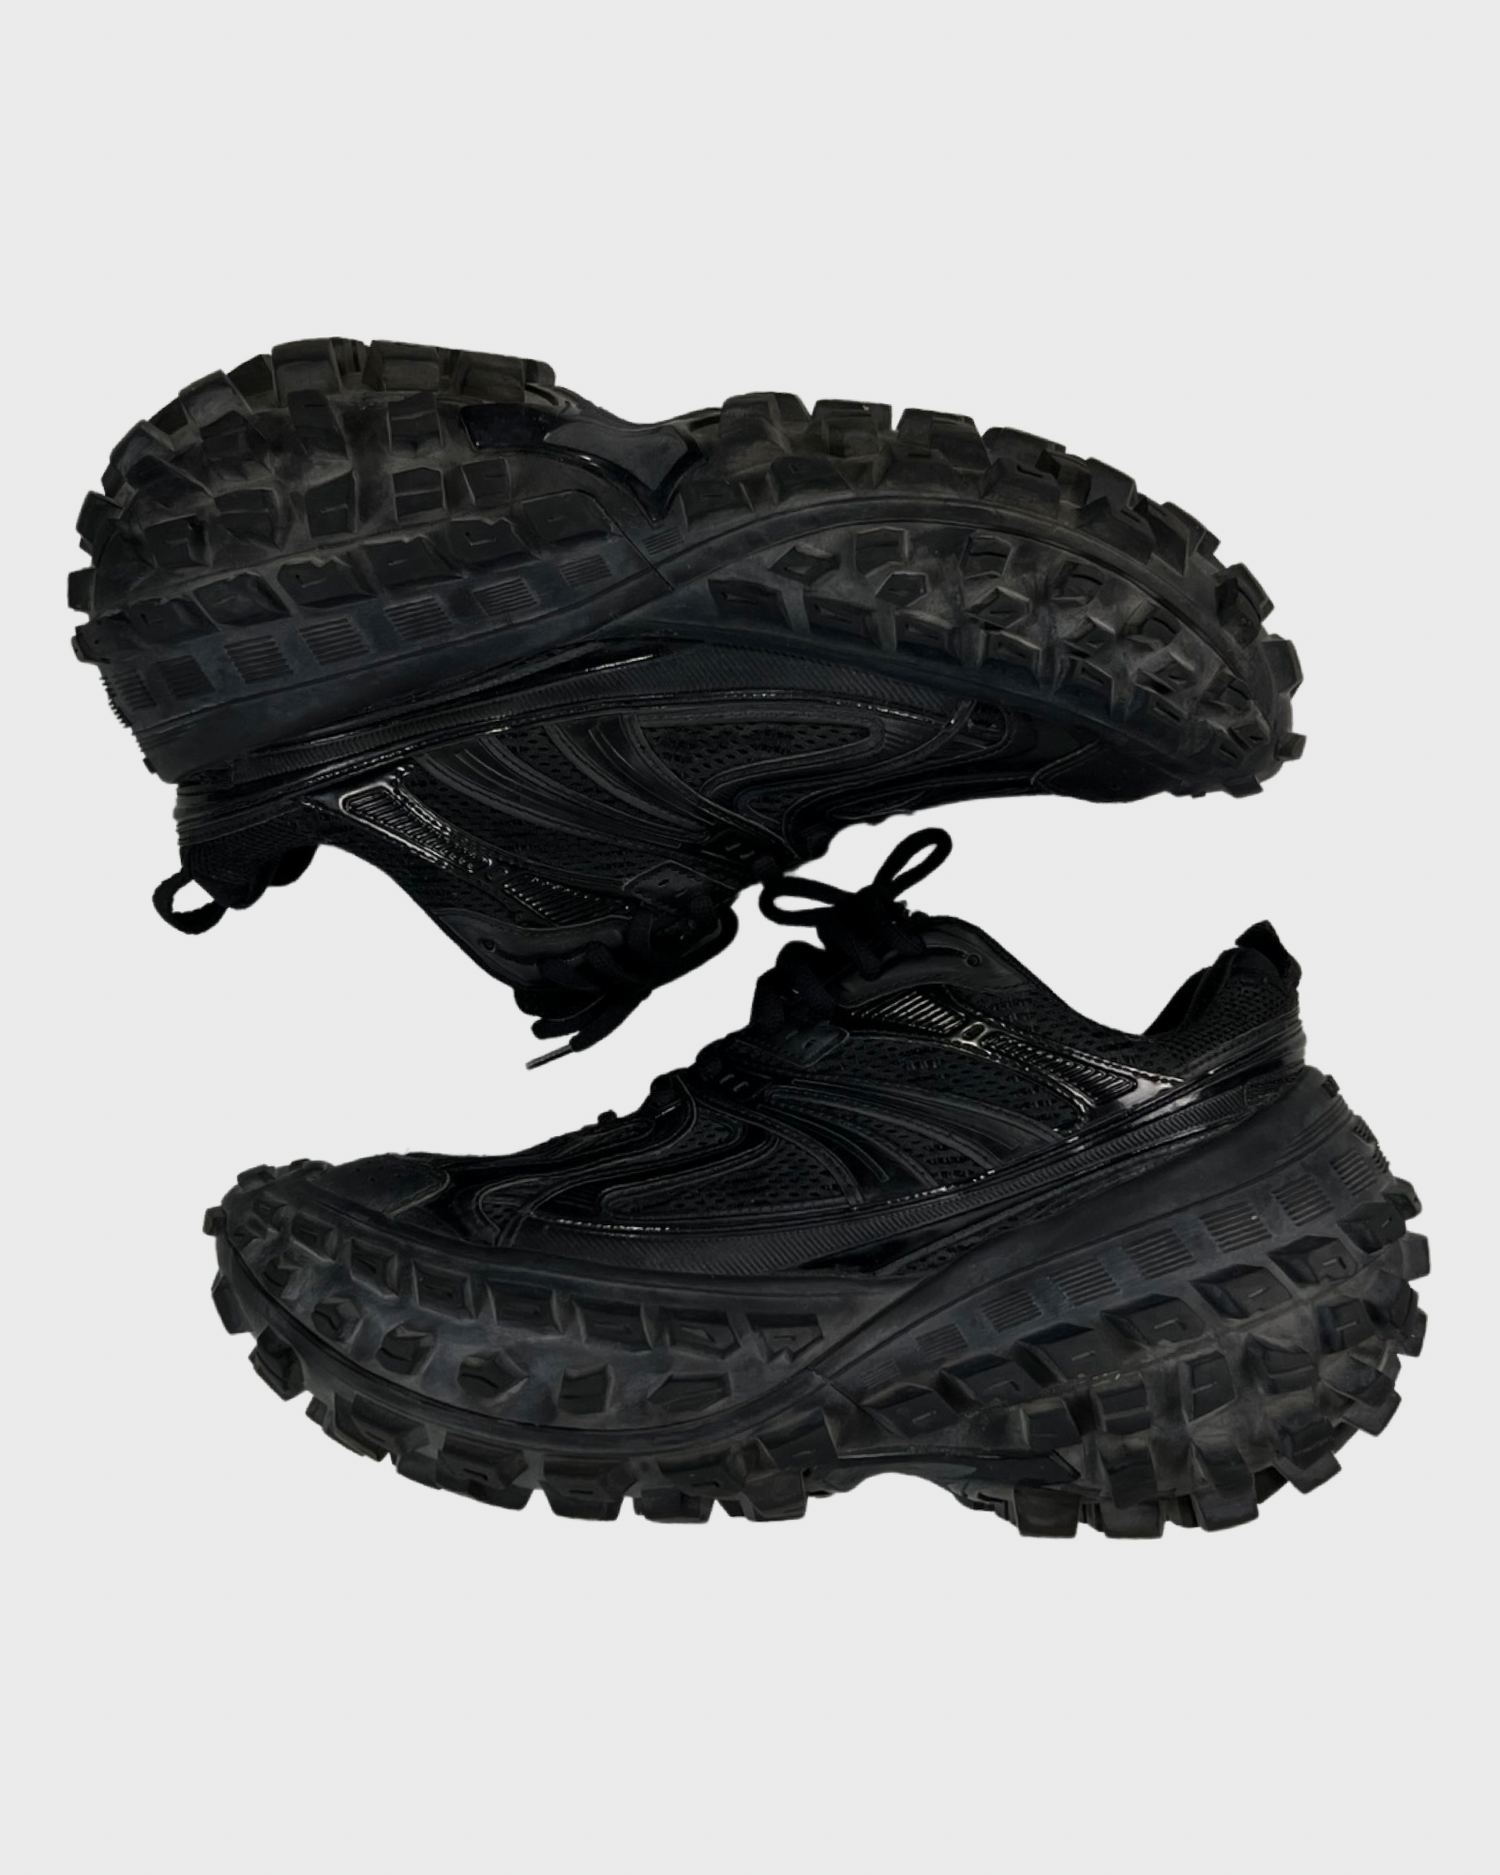 Balenciaga Defender sneakers in black SZ:43